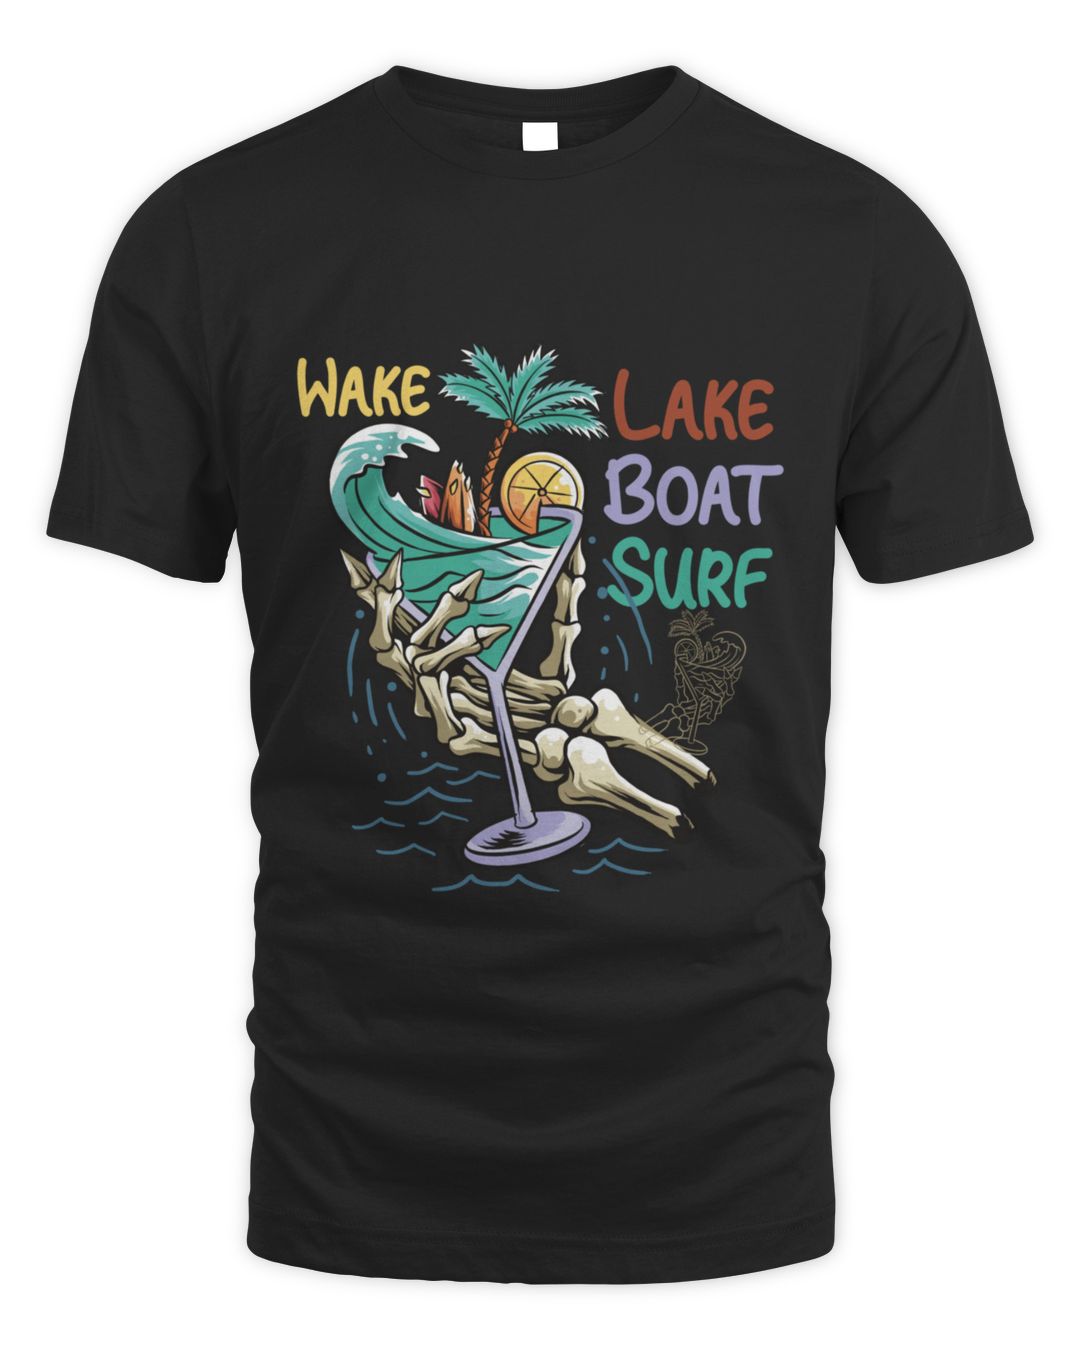 Wake Lake Boat Surf Funny Surf Saying T-Shirt